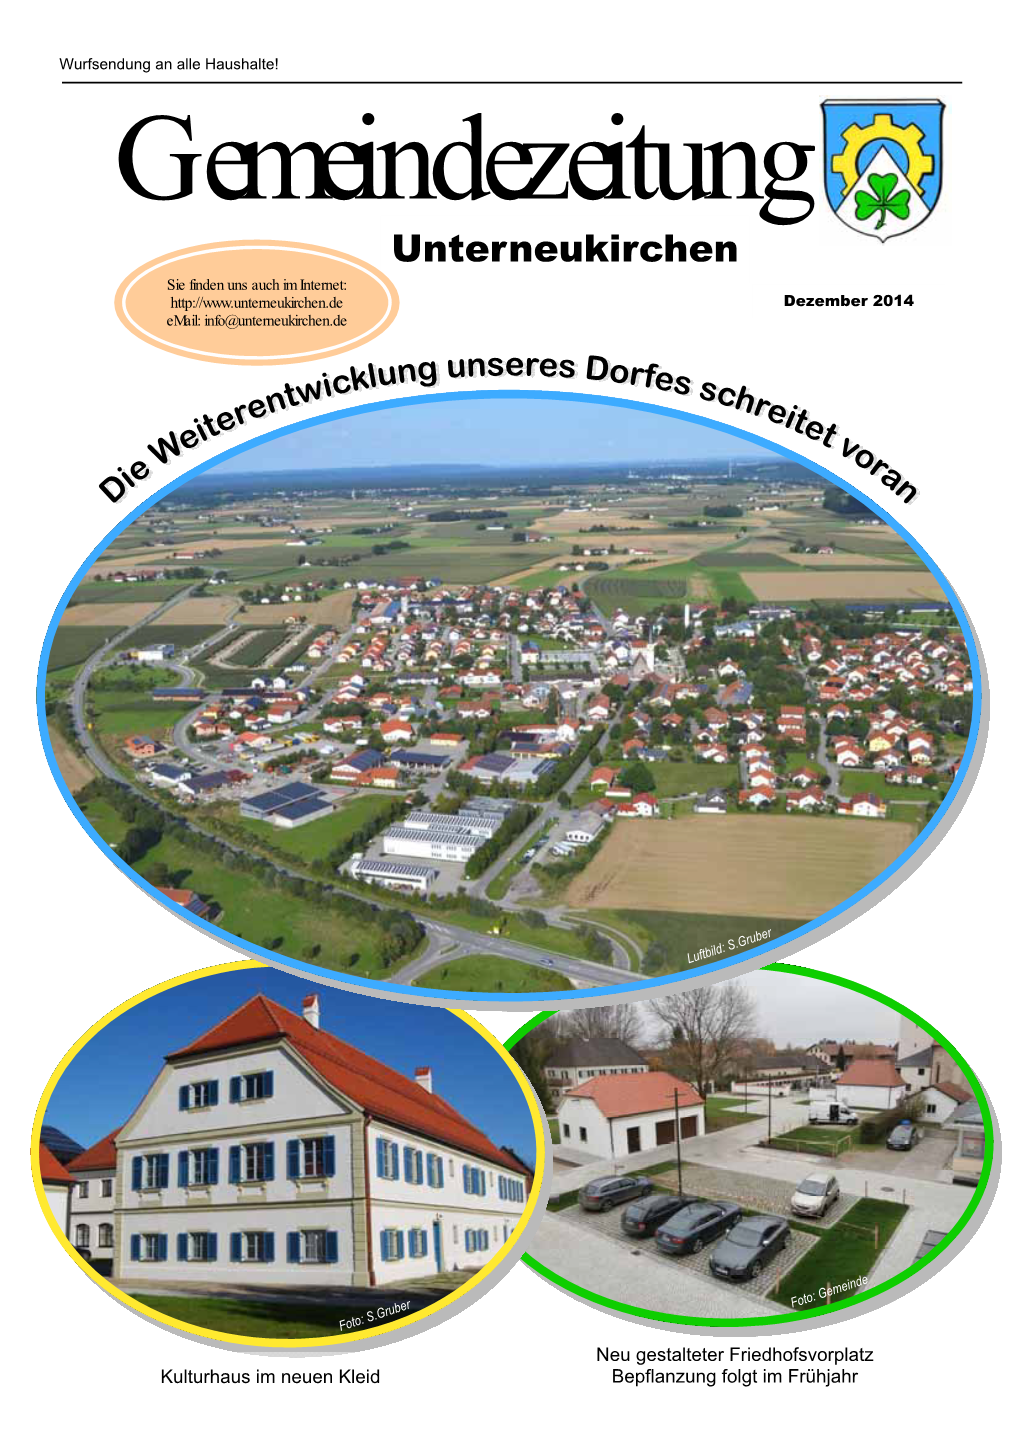 Gemeindezeitung Unterneukirchen Sie Finden Uns Auch Im Internet: Dezember 2014 Email: Info@Unterneukirchen.De